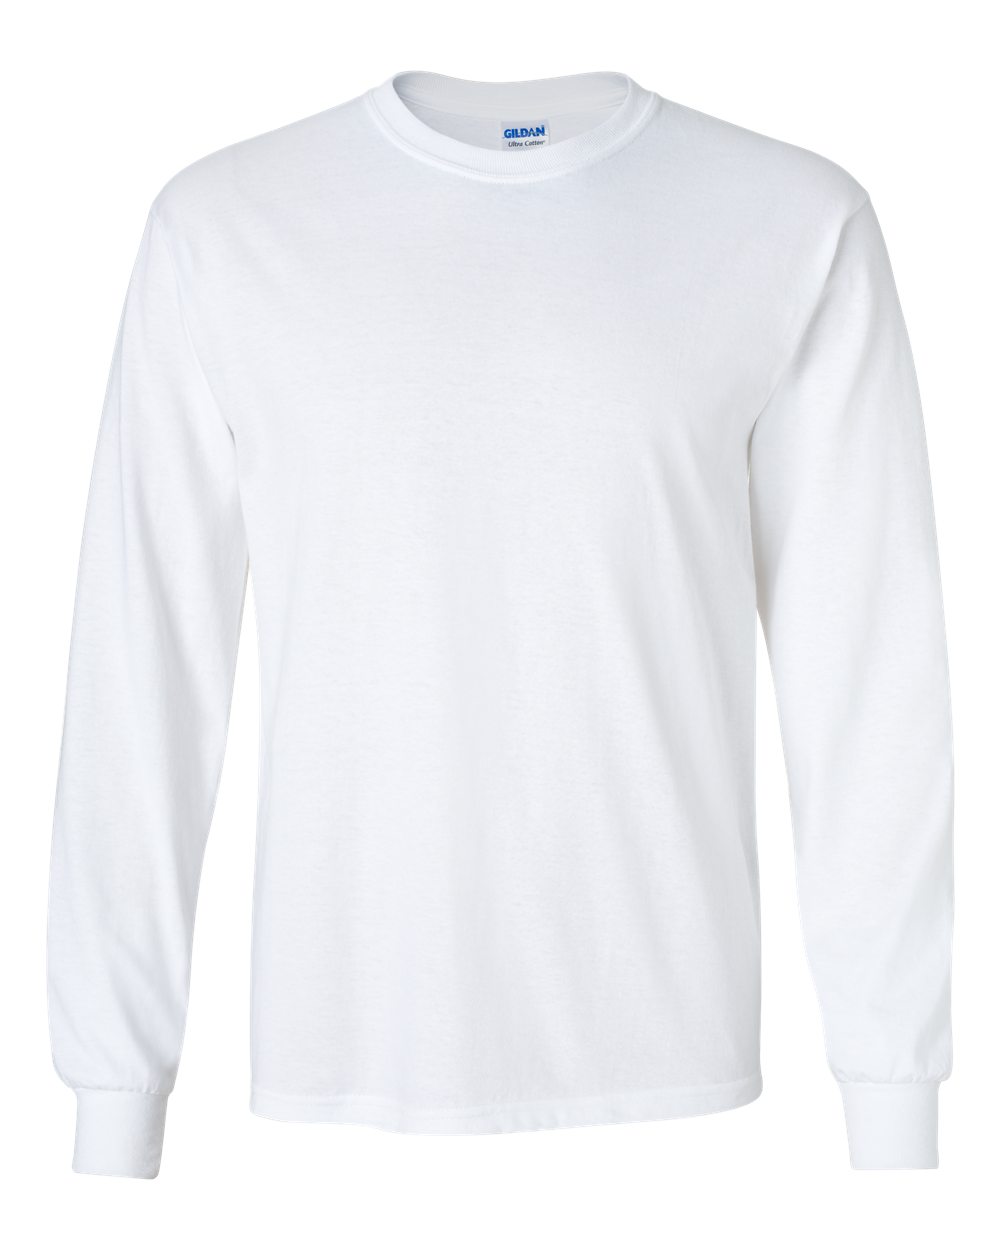 Unisex Long Sleeve T-Shirt | Dance